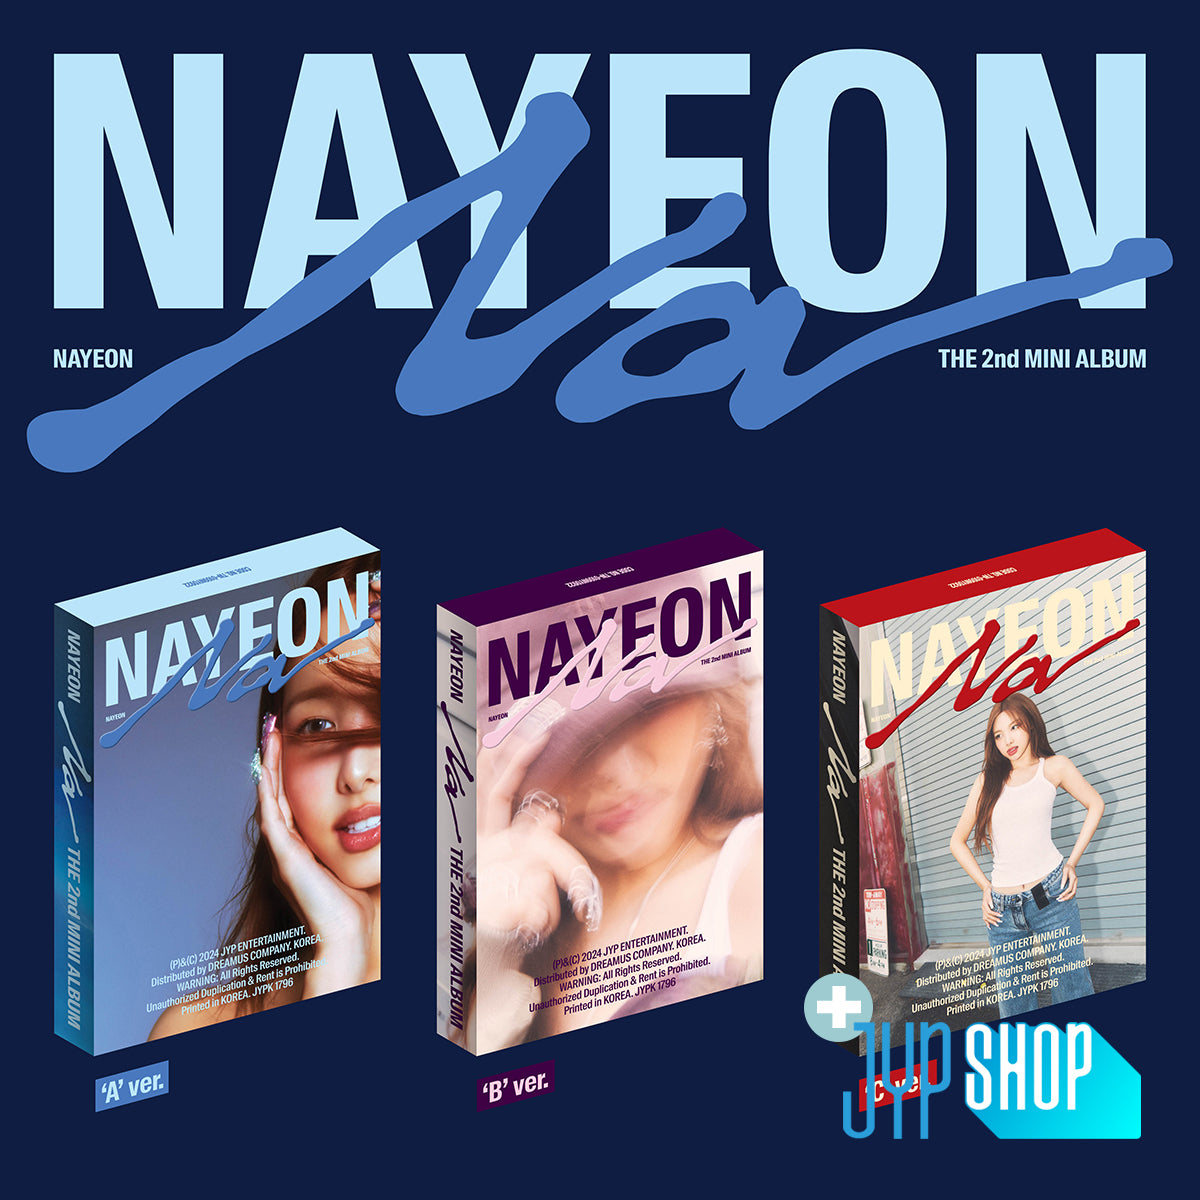 NAYEON (TWICE) - NA ('A ver. / 'B' ver / 'C' ver.) + JYP SHOP P.O.B